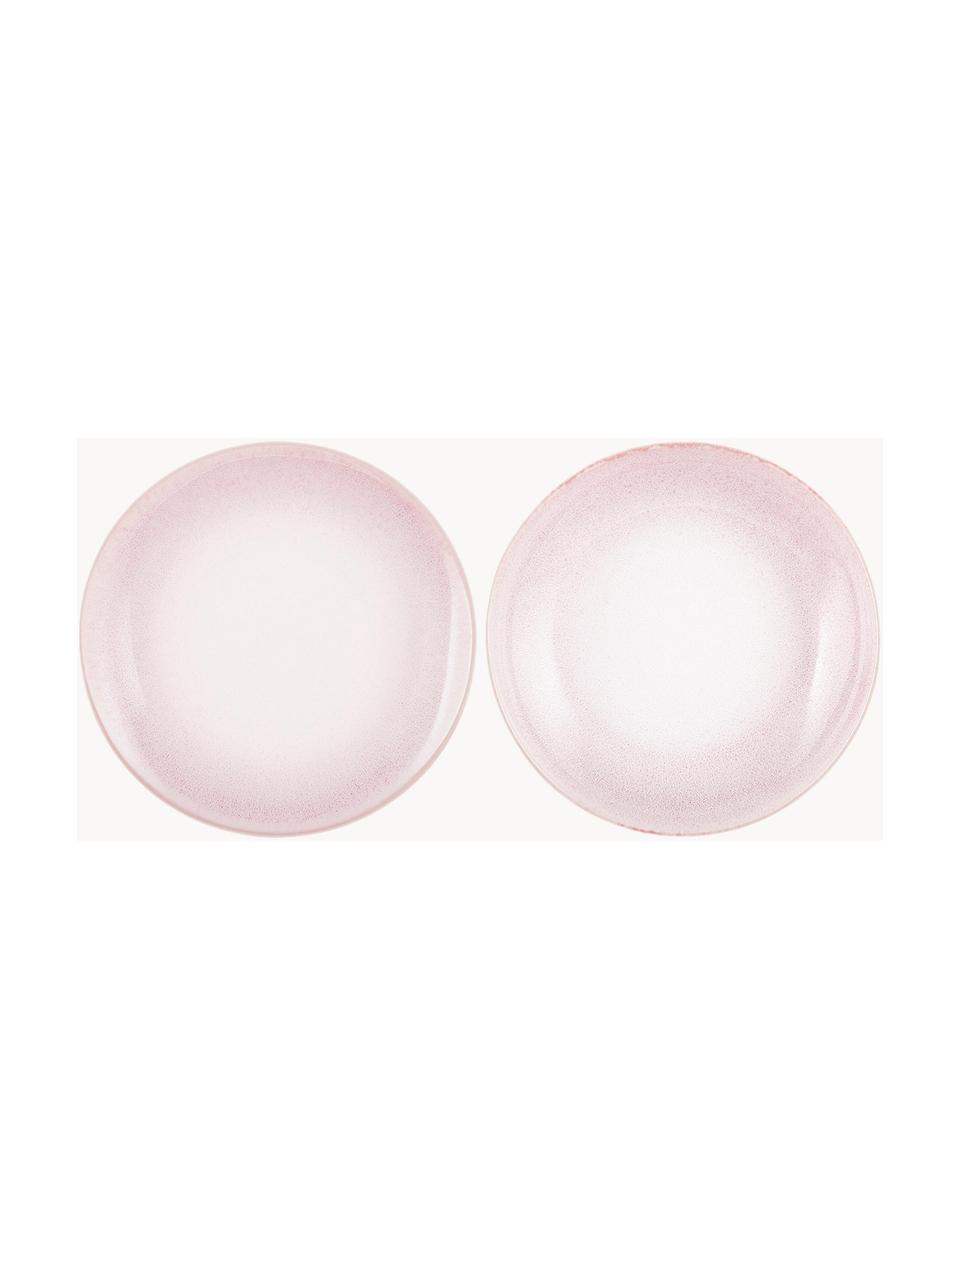 Assiettes plates en porcelaine Amalia, 2 pièces, Porcelaine, Rose pastel, blanc crème, Ø 25 cm